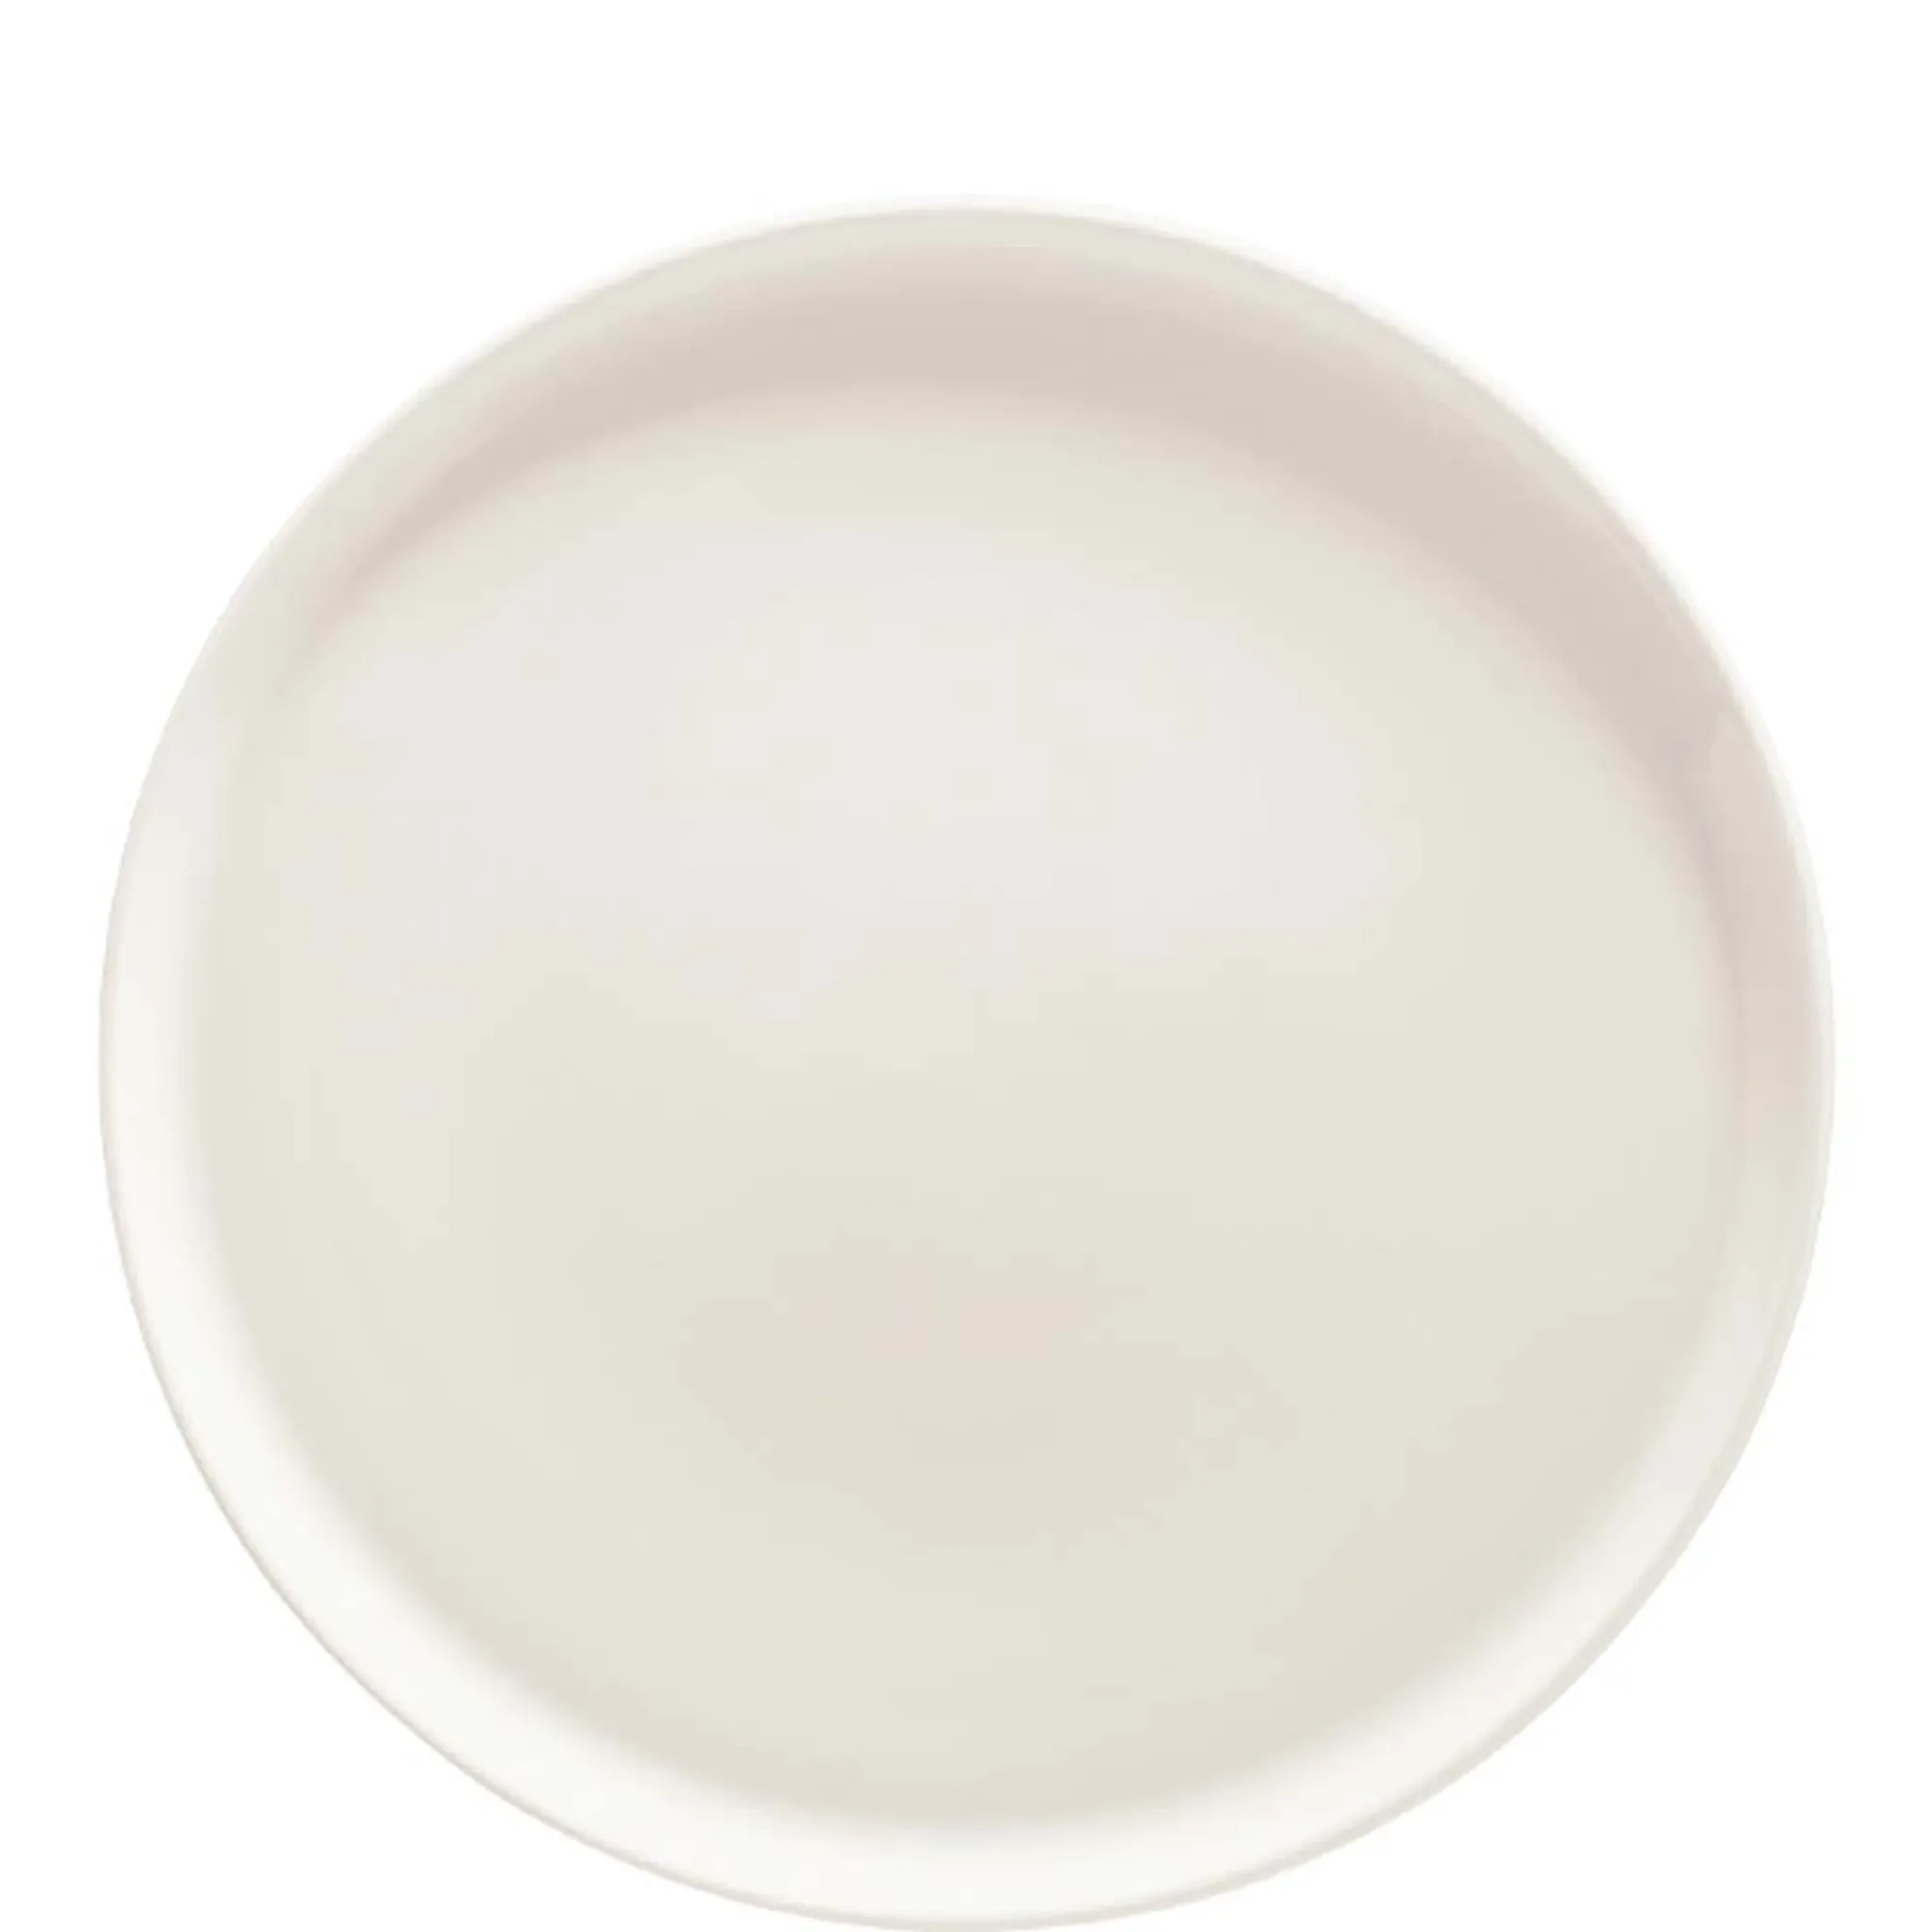 Bonna Premium Porcelain Premium Cream 32cm, Pizzateller, Porzellan, Stück 1 creme-weiß, 32.5cm